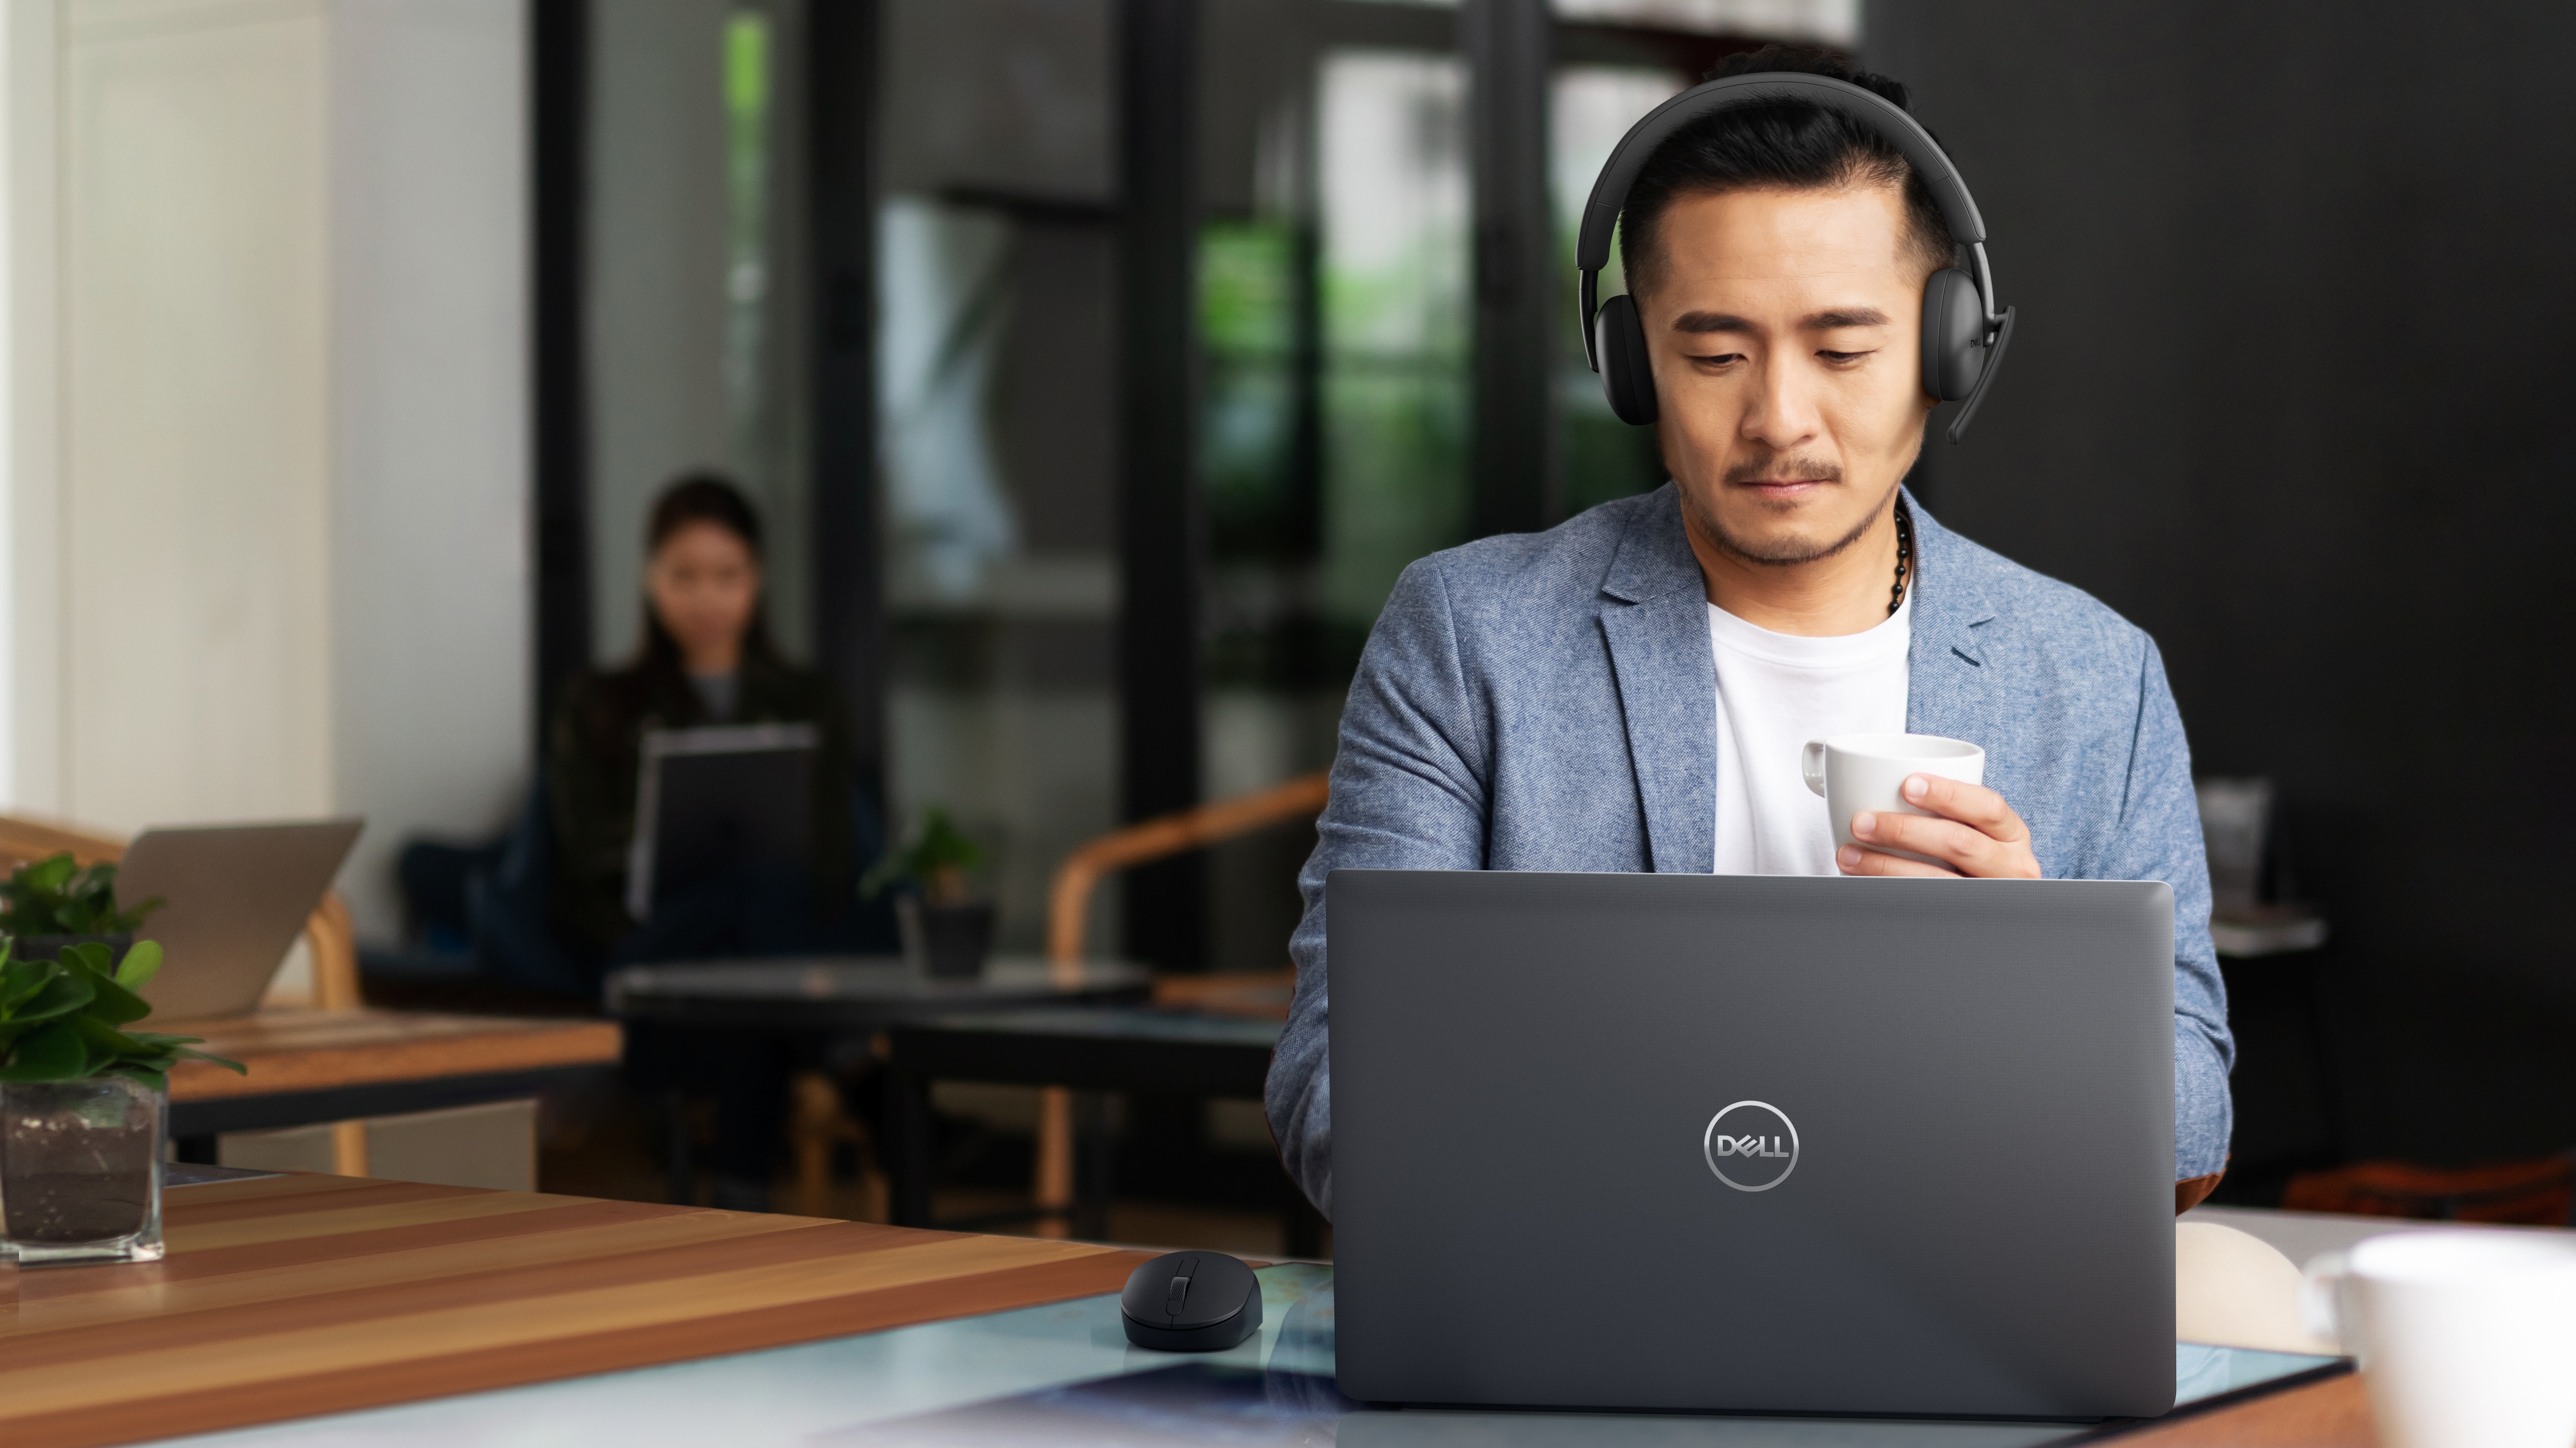 Mann mit Kopfhörer, der an einem Dell Laptop auf dem Tisch vor ihm arbeitet